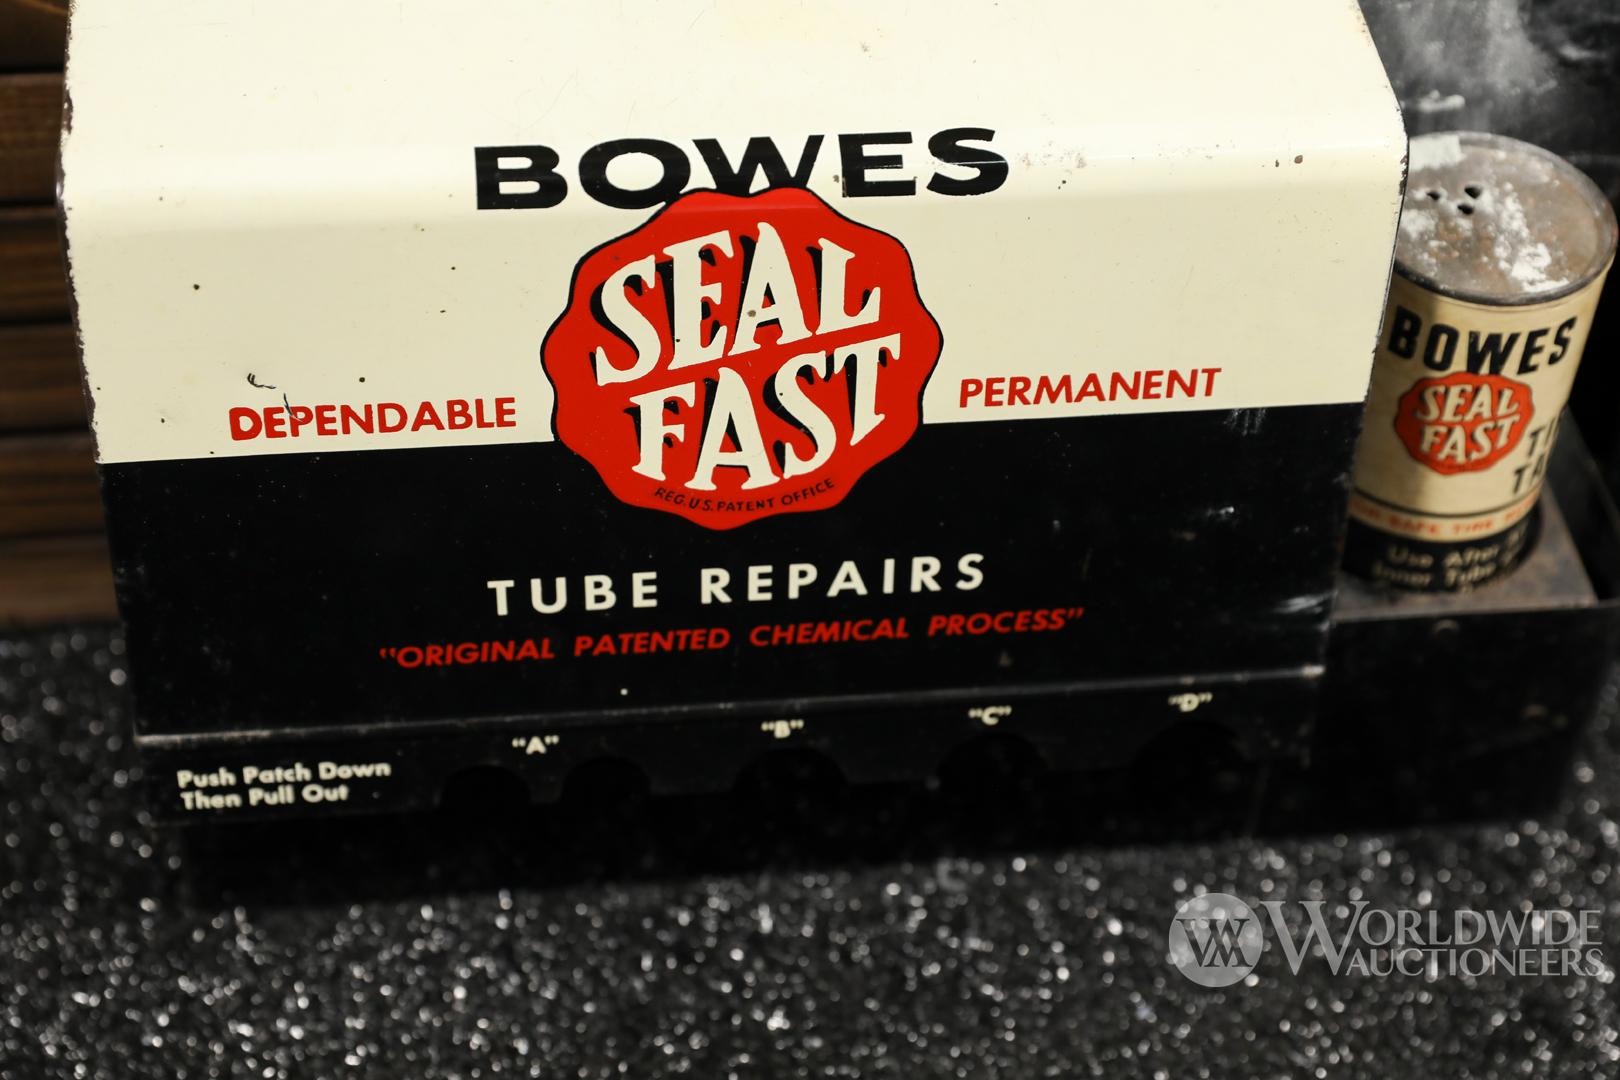 Late 1940s Bowes Tube Repair Display